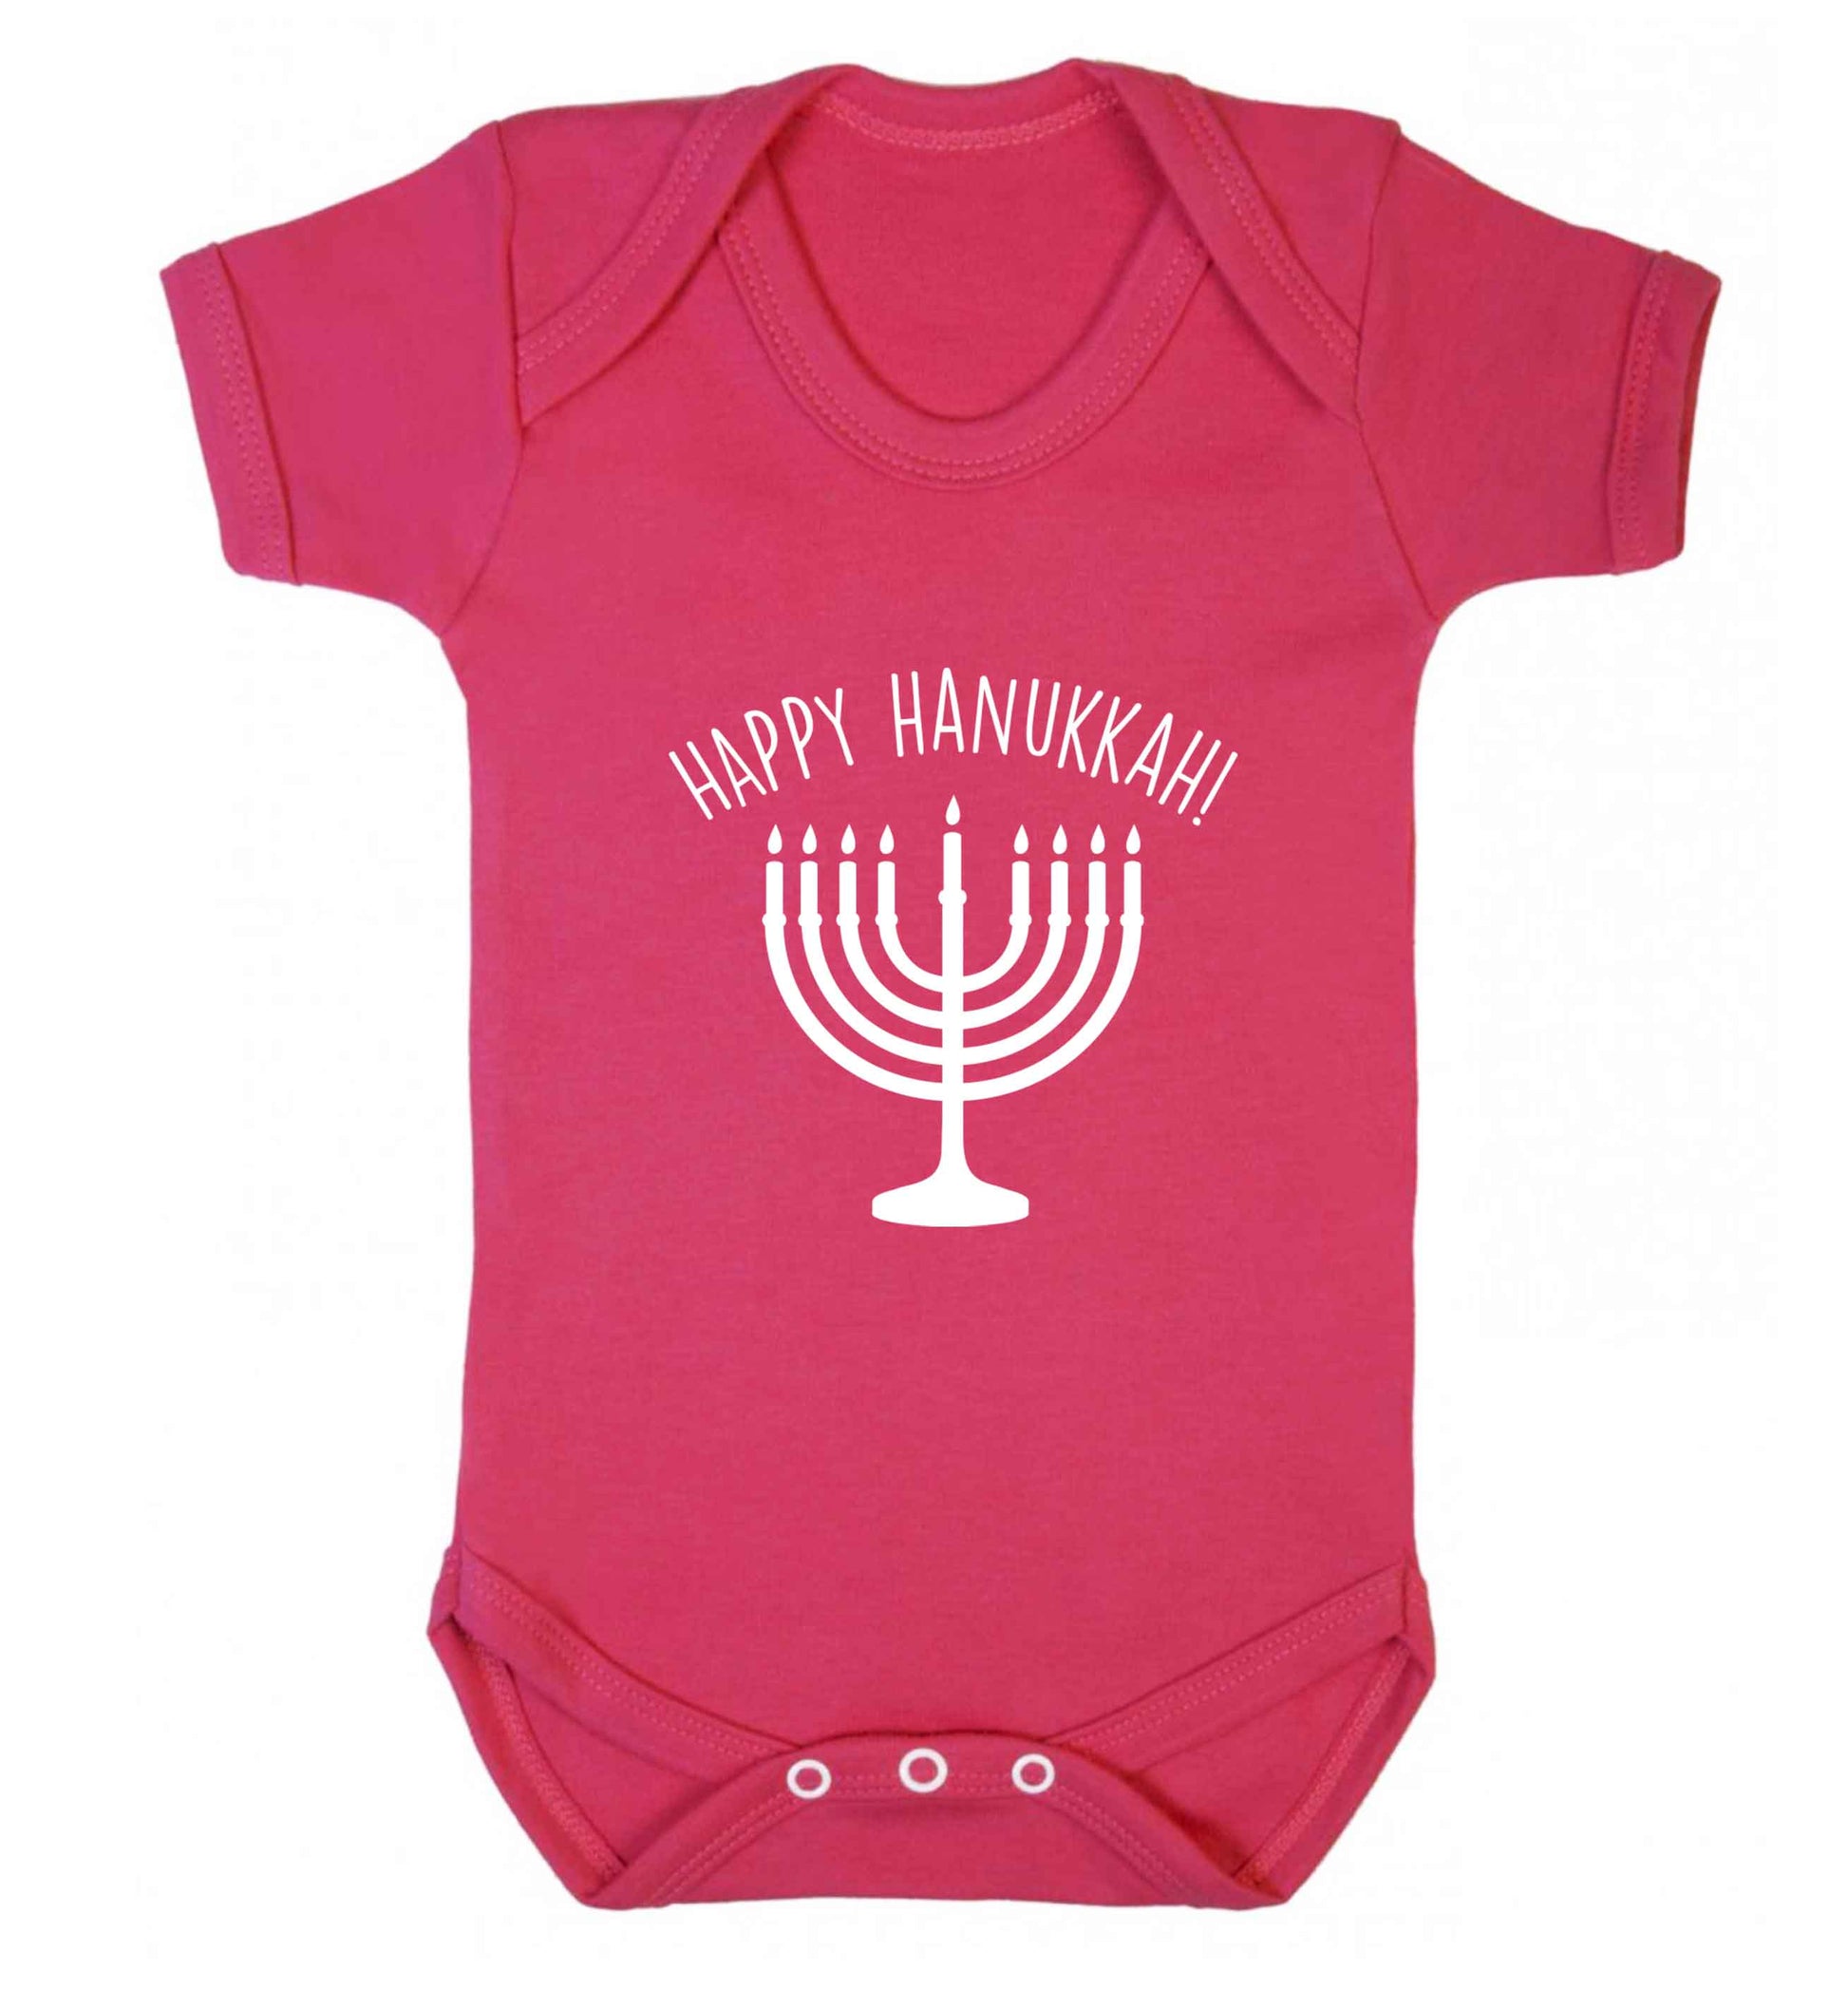 Happy hanukkah baby vest dark pink 18-24 months